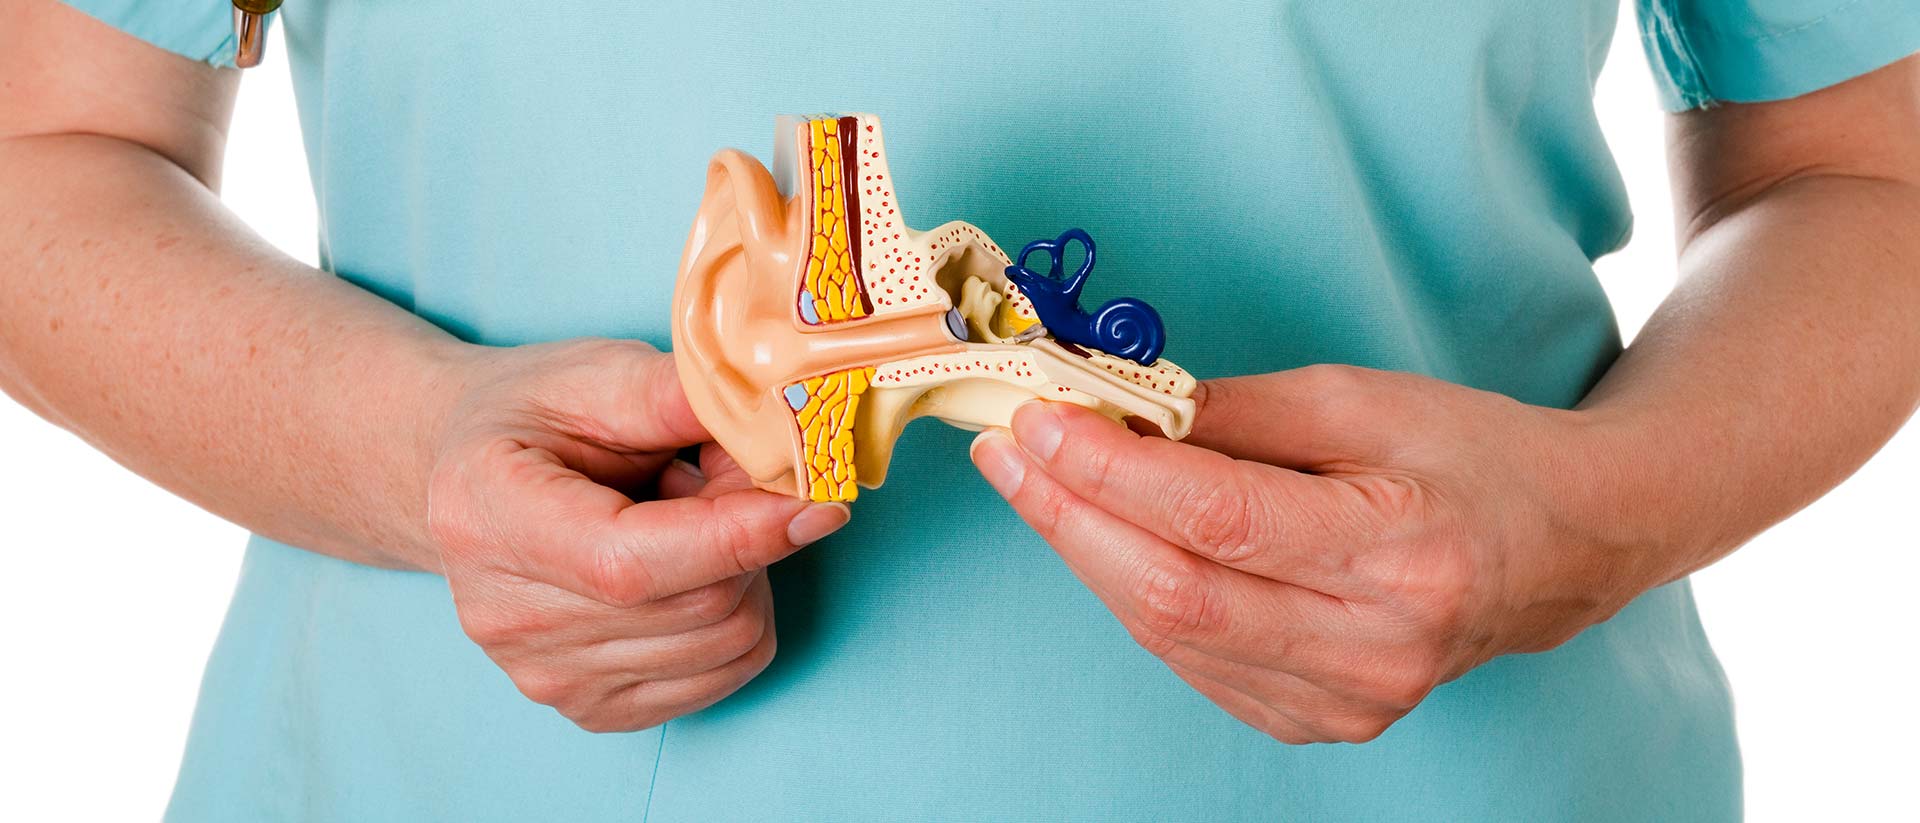 Вестибулярный неврит: «Внезапная потеря слуха вследствие нарушений в системе равновесия»